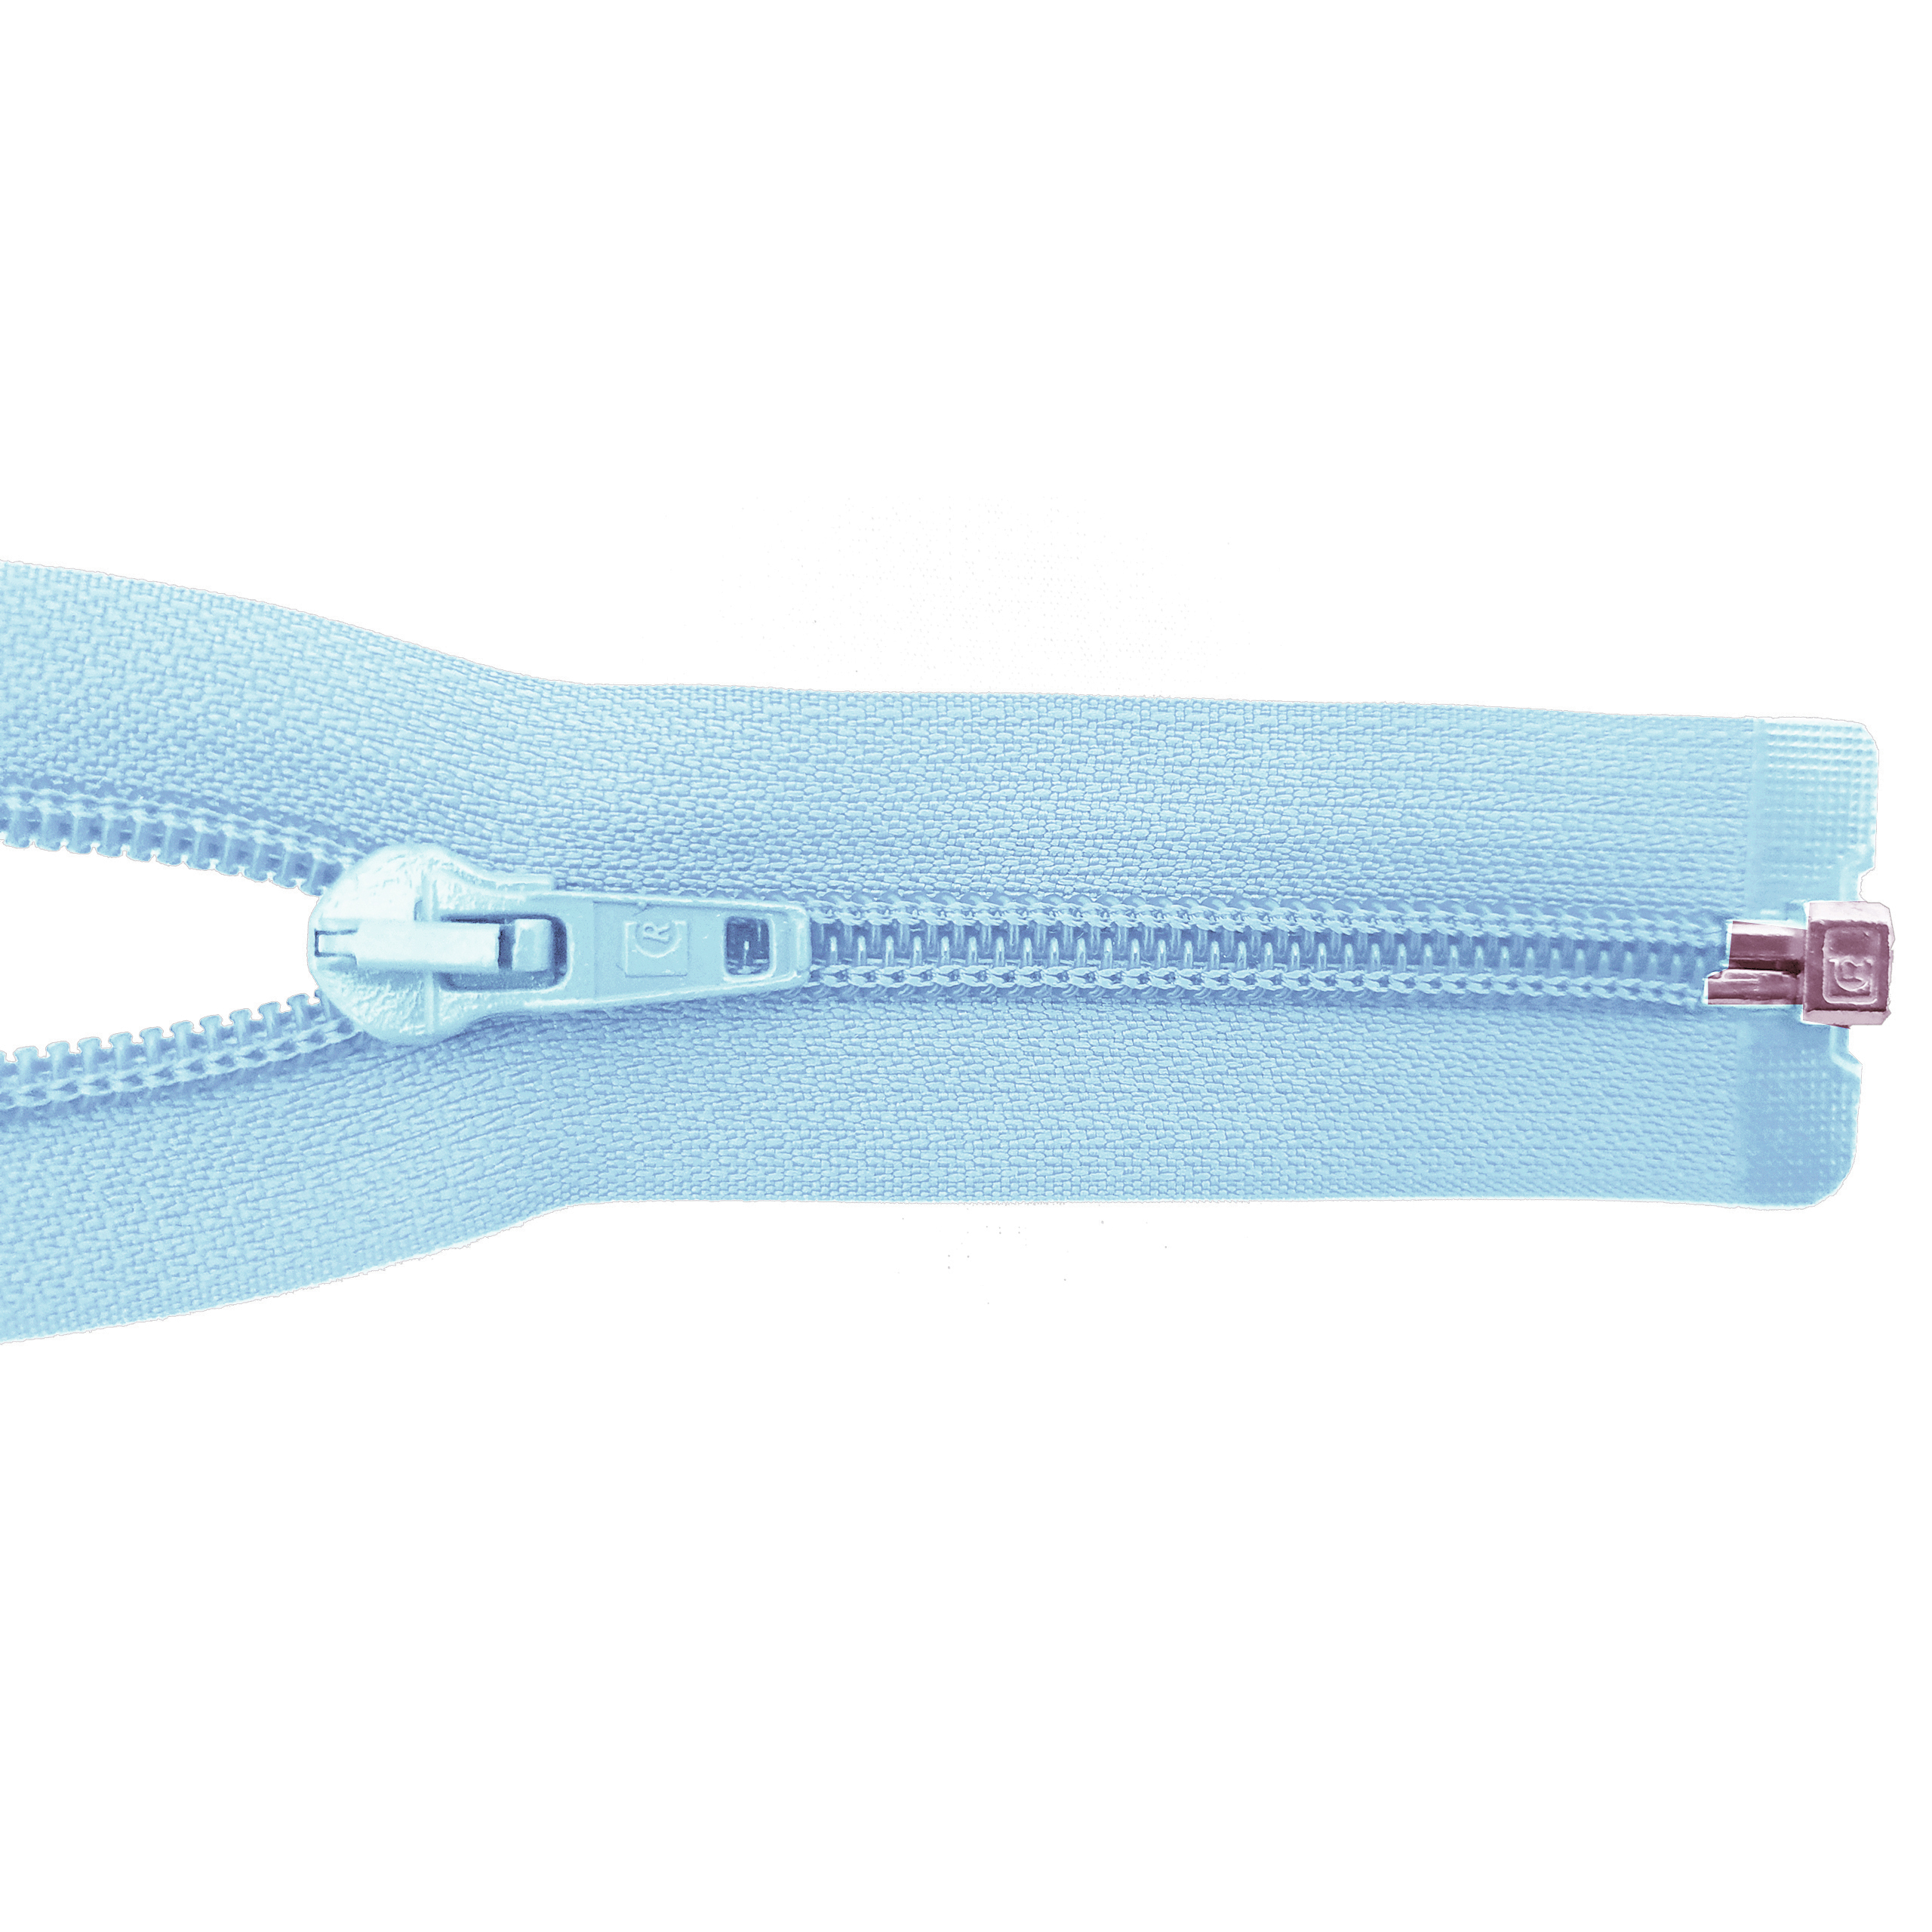 Reißverschluss, teilbar, Spirale breit, gardeniablau (blassblau), hochwertiger Marken-Reißverschluss von Rubi/Barcelona